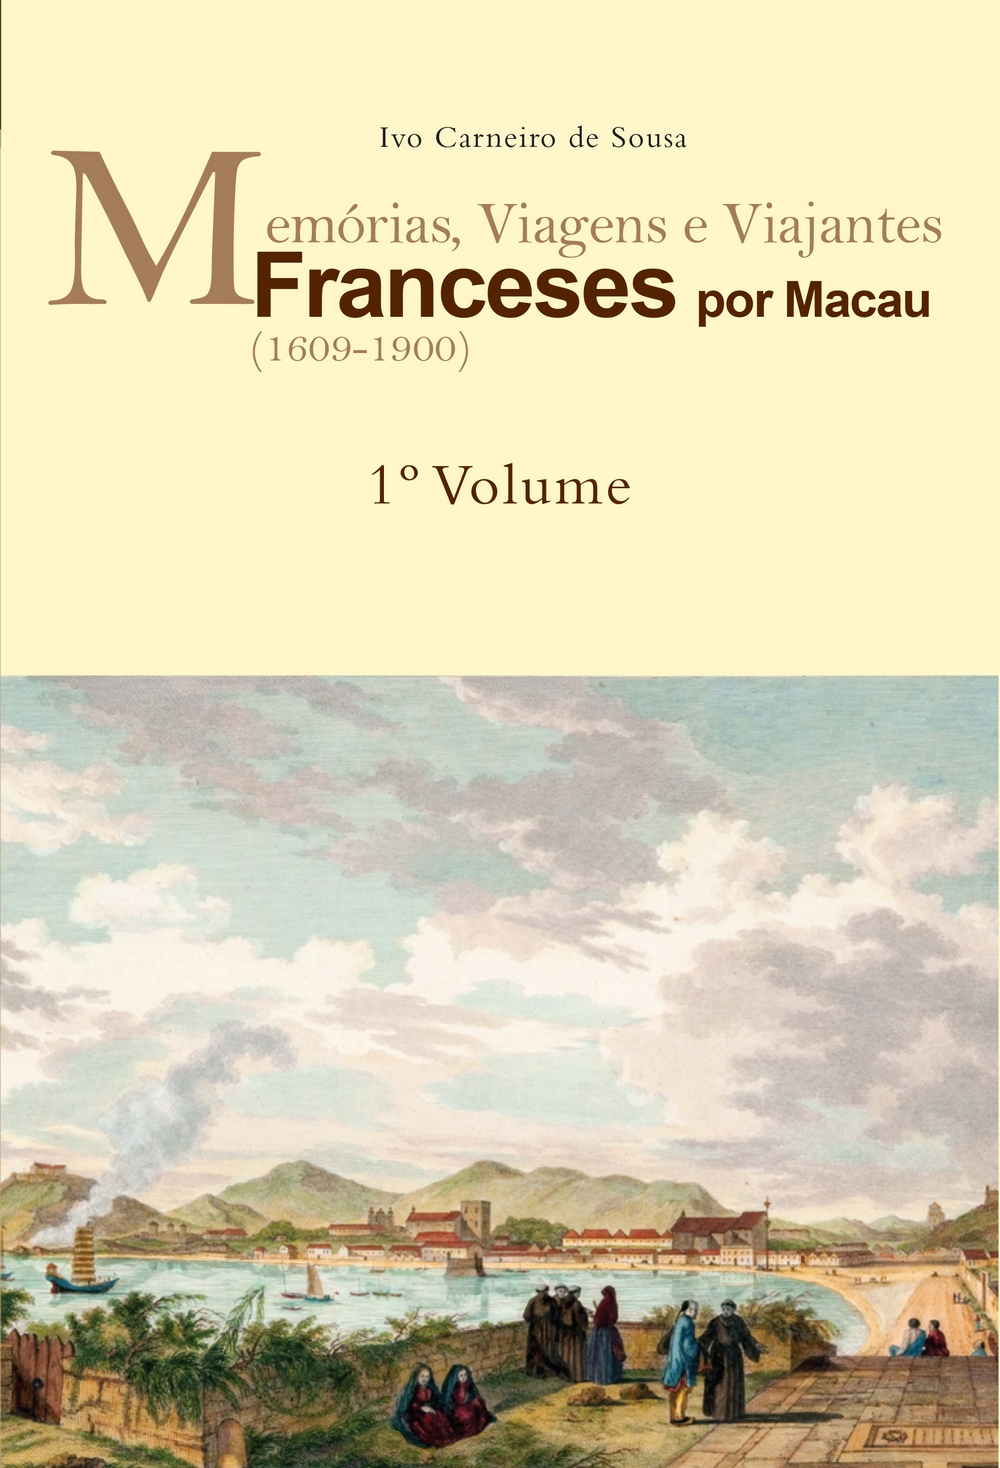 Novo livro de Ivo Carneiro de Sousa aborda relações históricas entre a França e a China